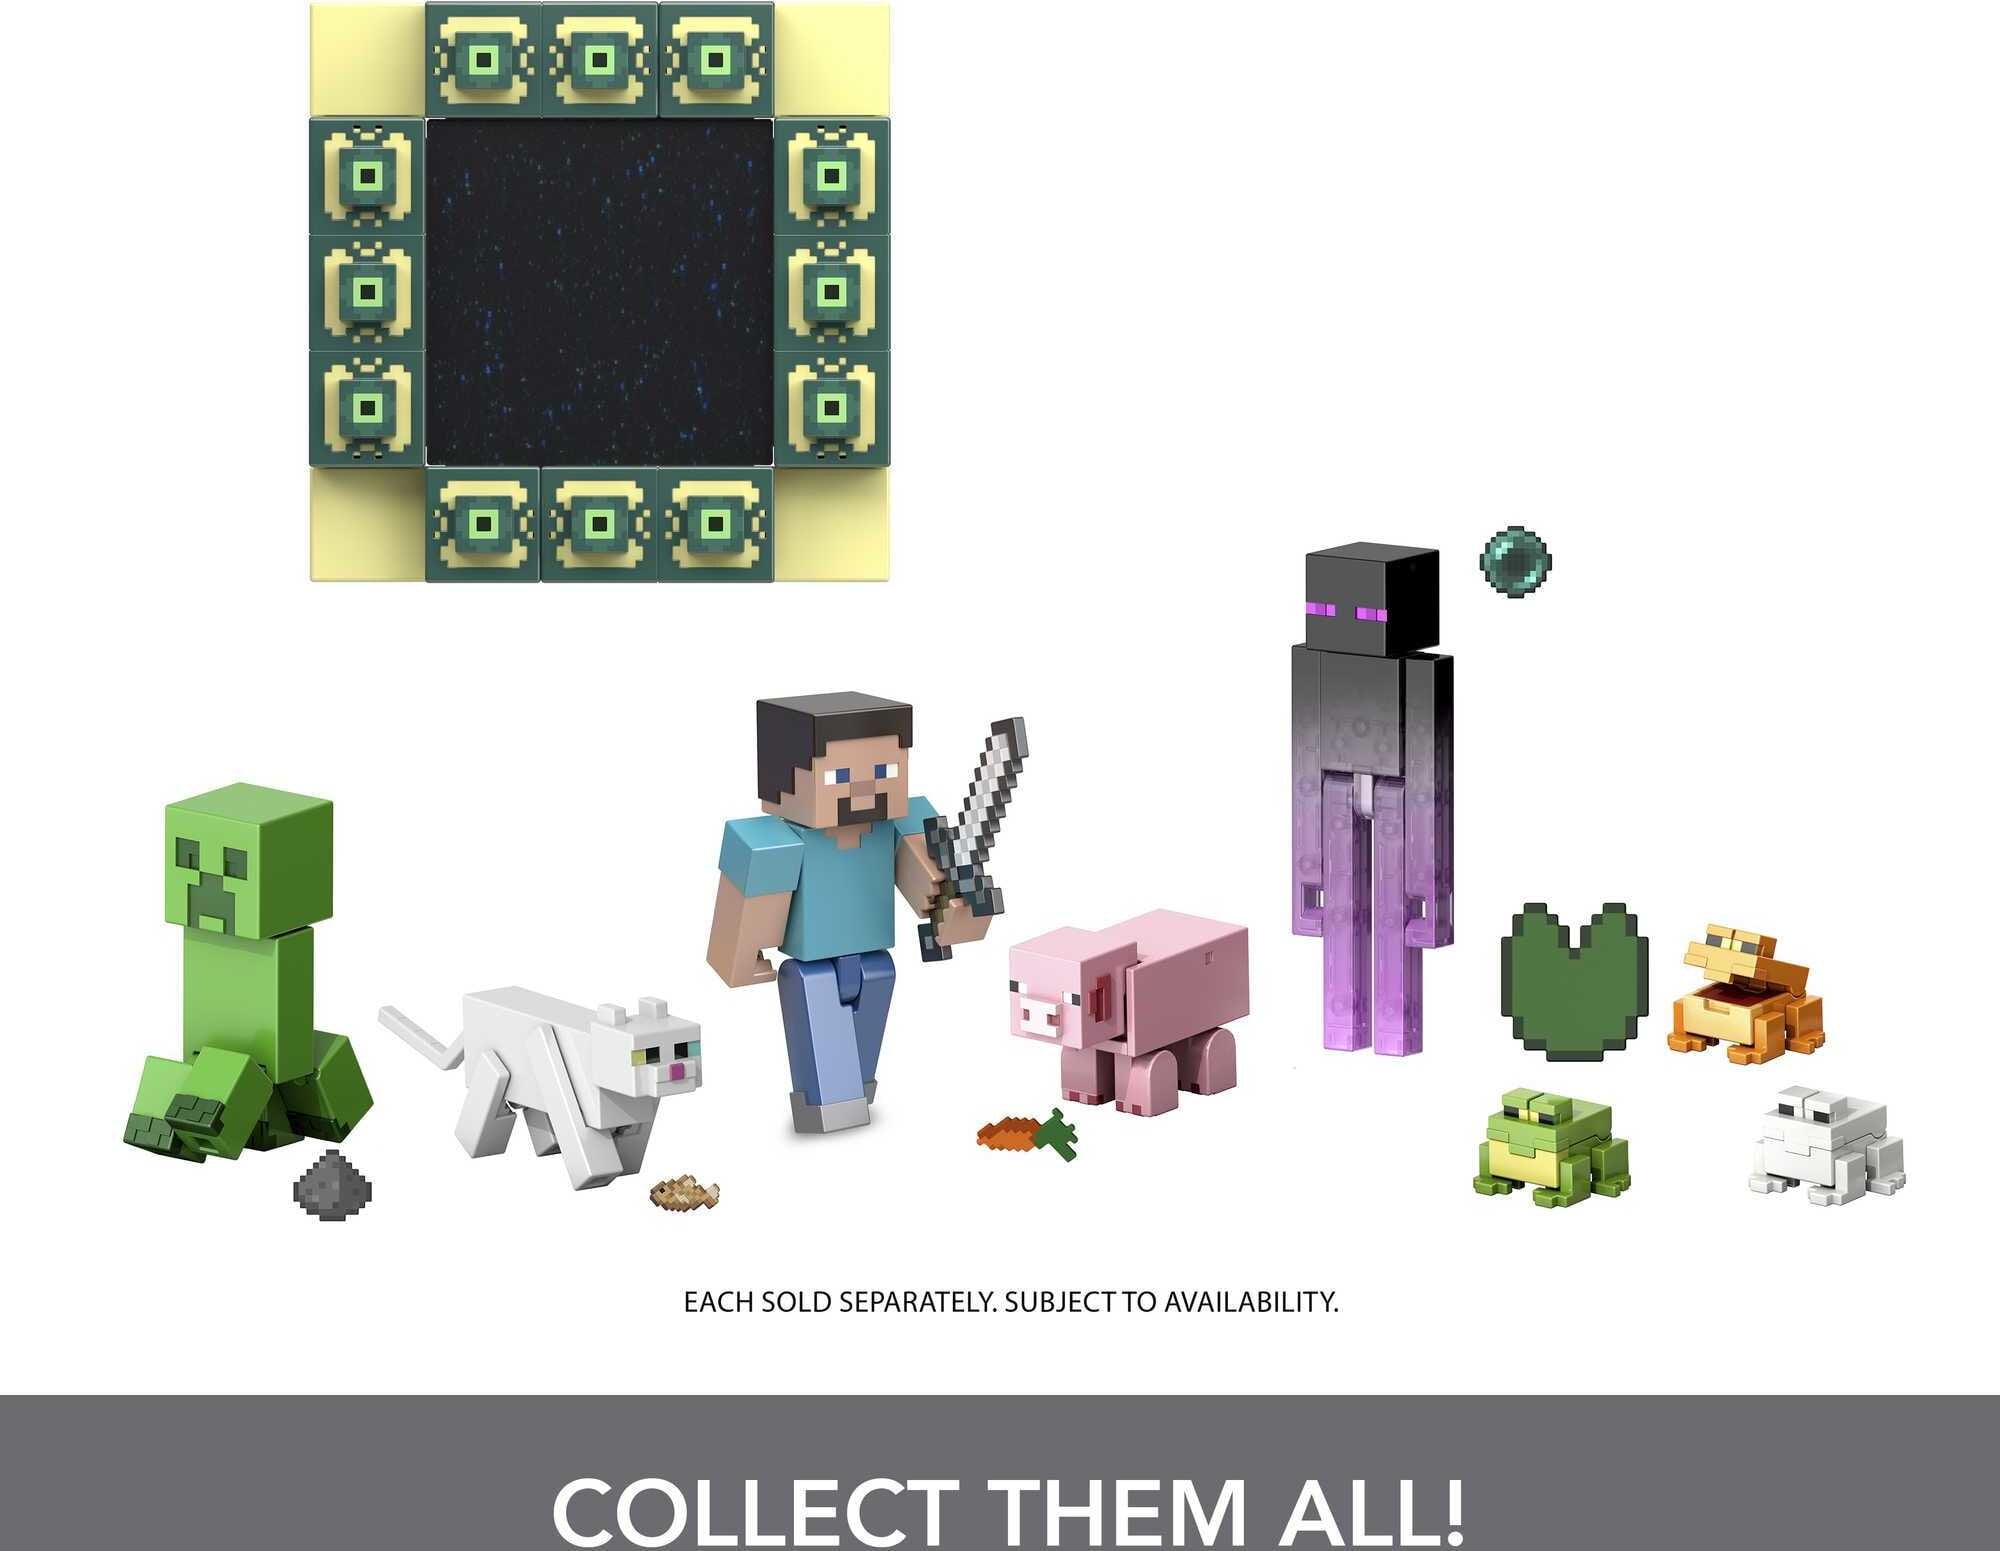  Mattel Minecraft Creeper 8.5 Figure Based on